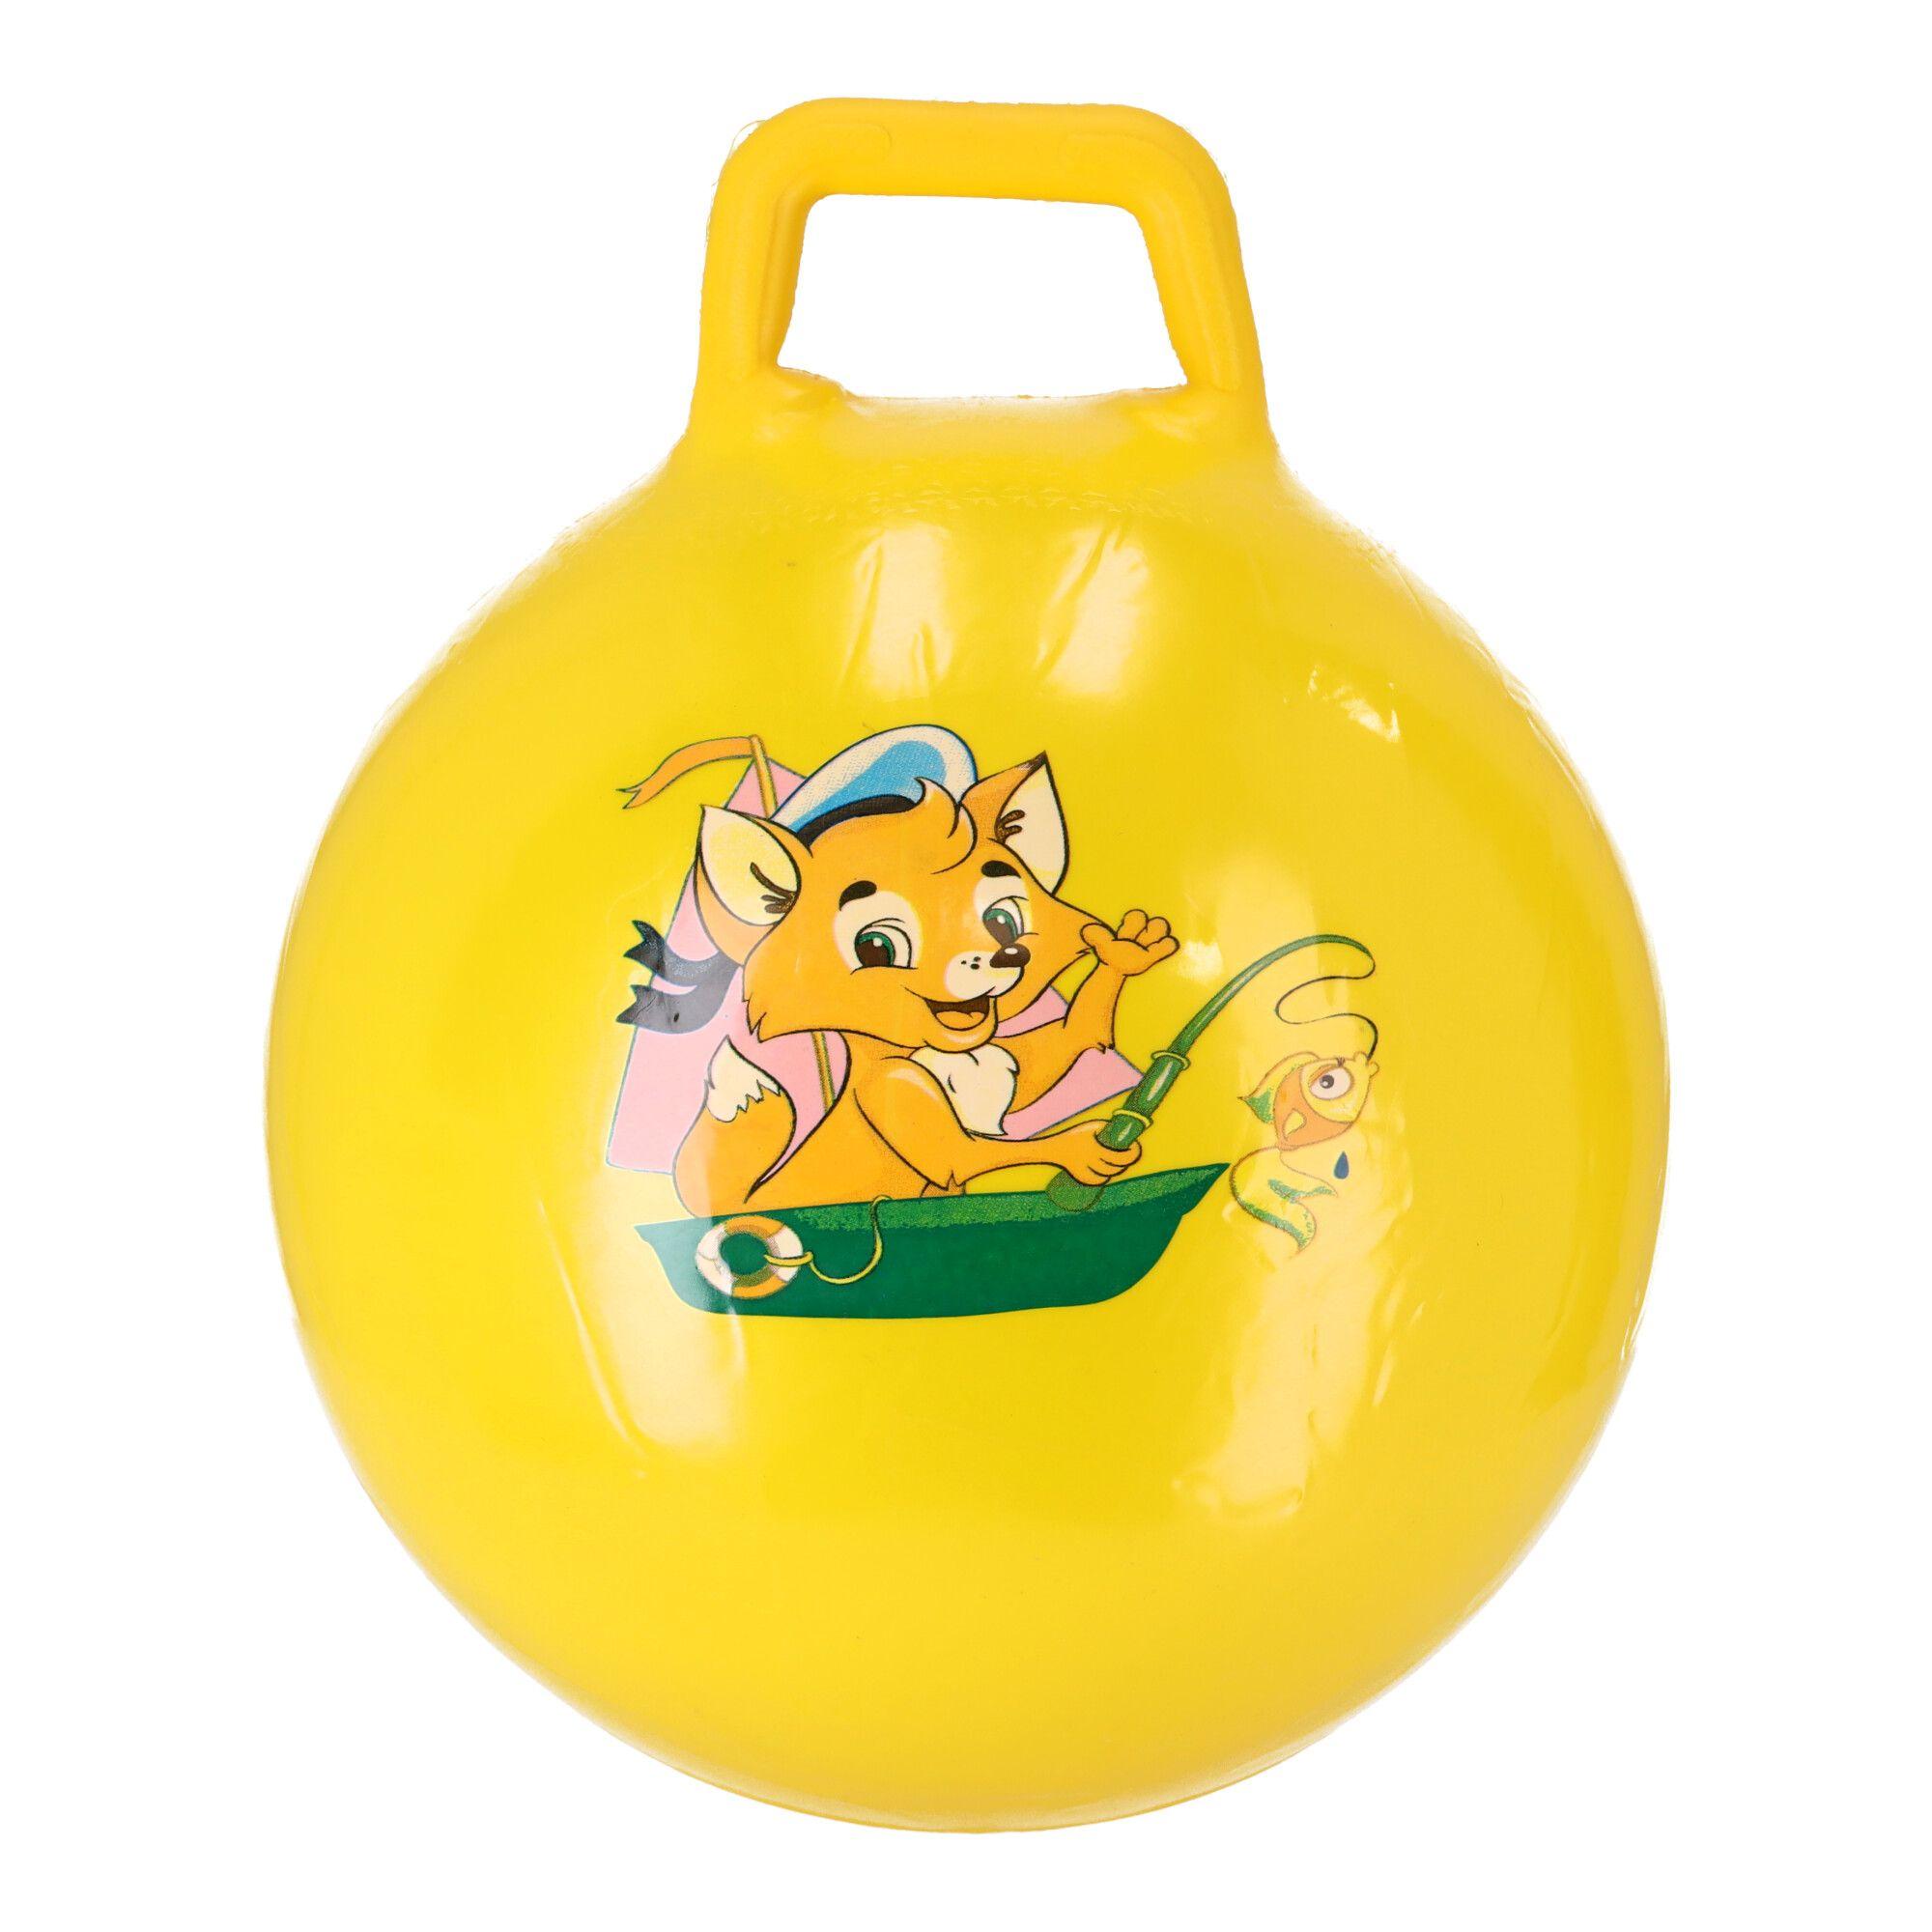 Piłka do skakania, skoczek dla dzieci z uchwytami - żółta